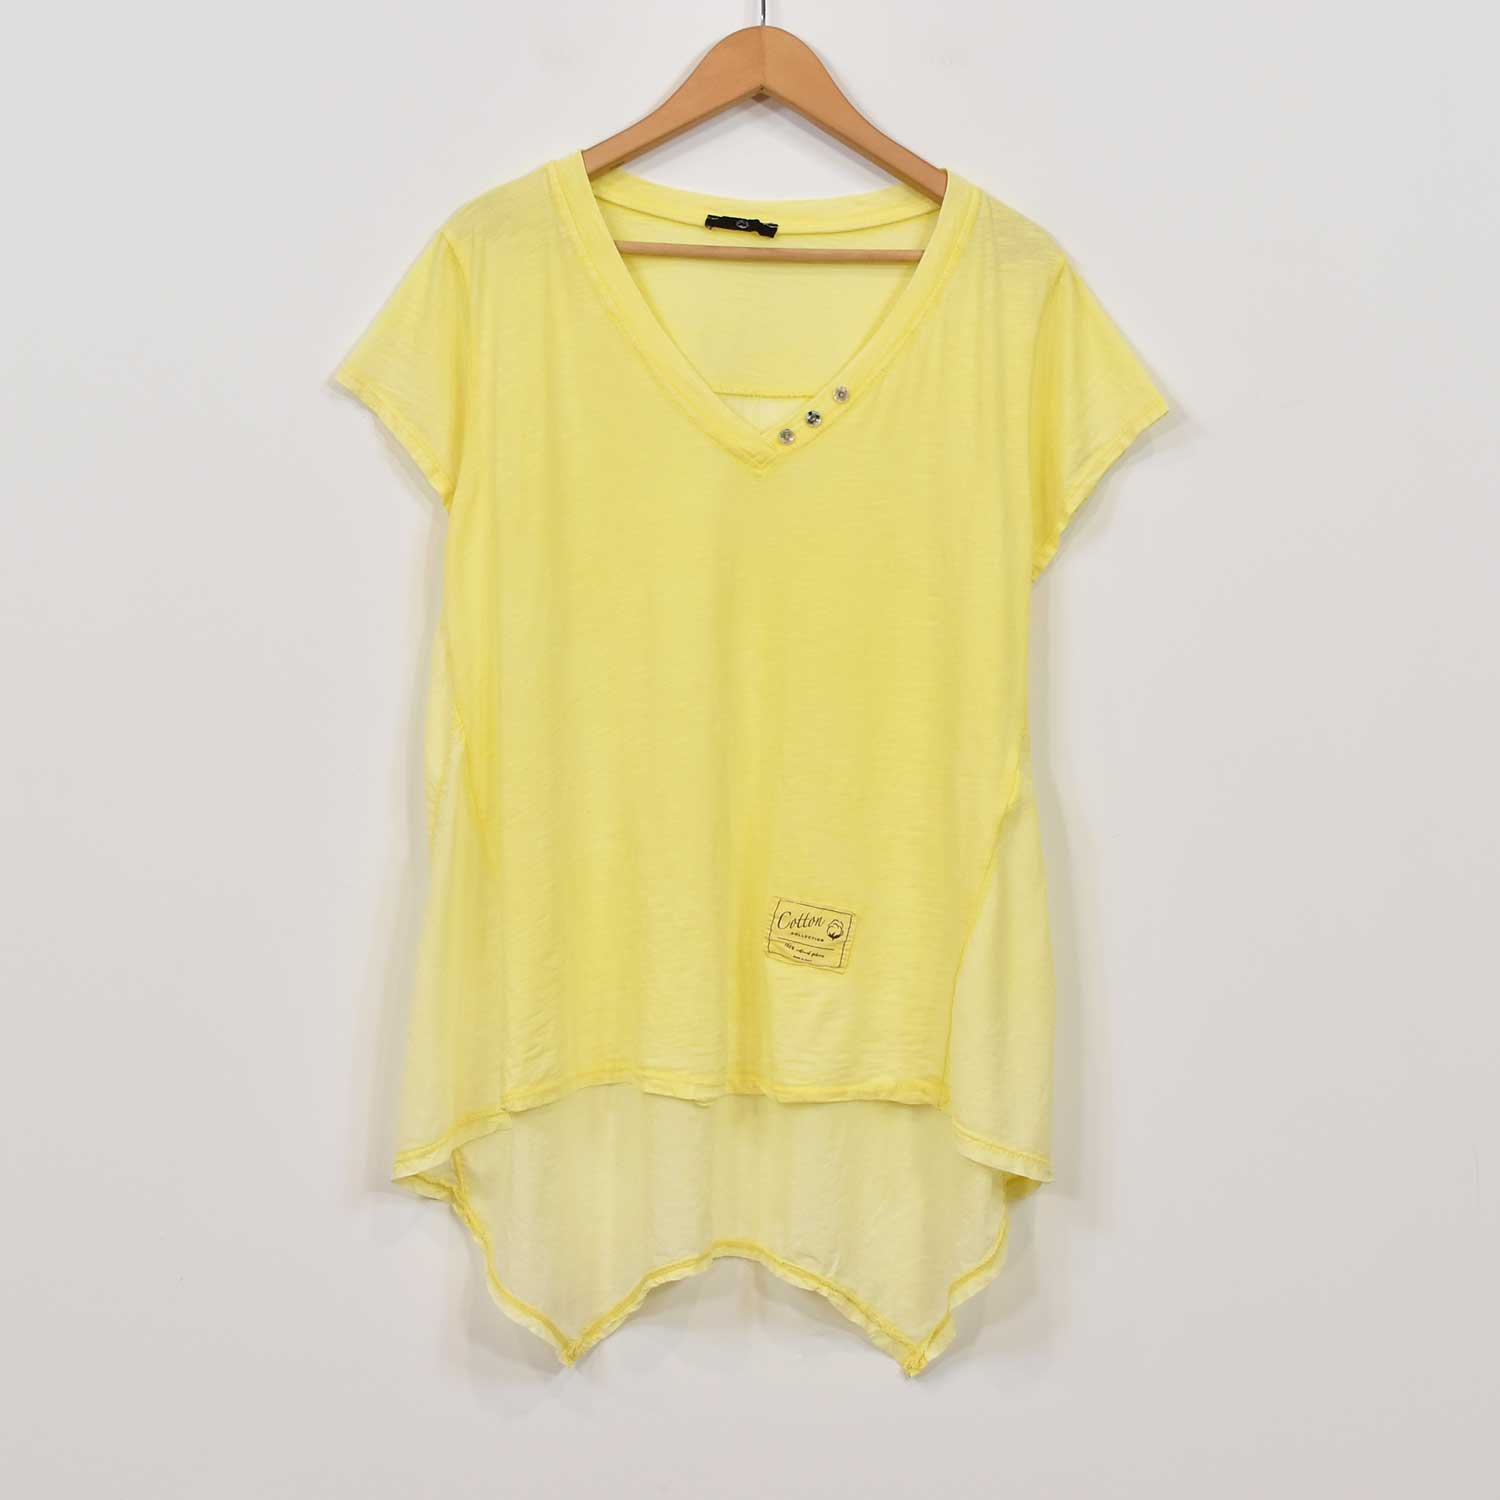 Yellow peaks t-shirt